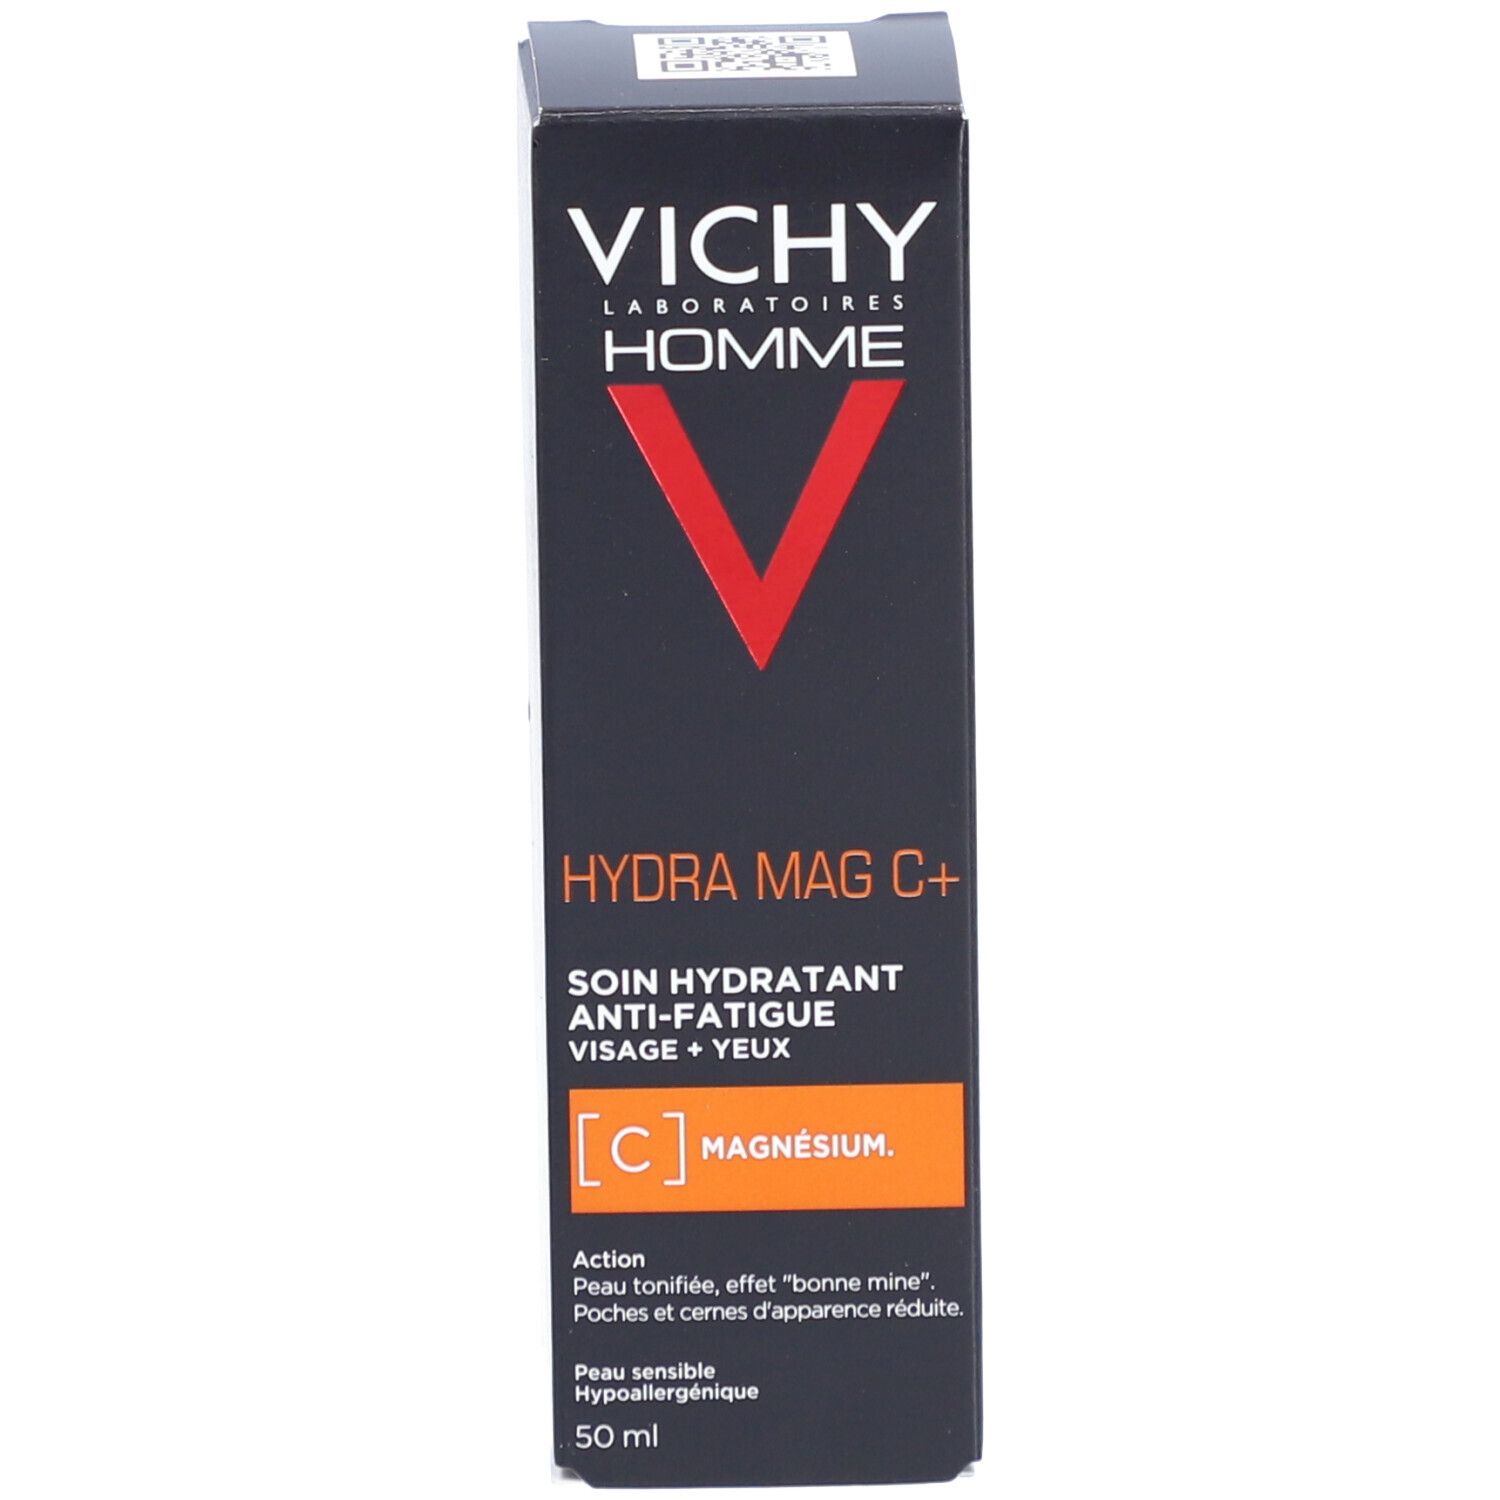 Vichy Homme Hydra Mag C Feuchtigkeitspflege Anti Mudigkeit Gesicht Augen Shop Apotheke Ch